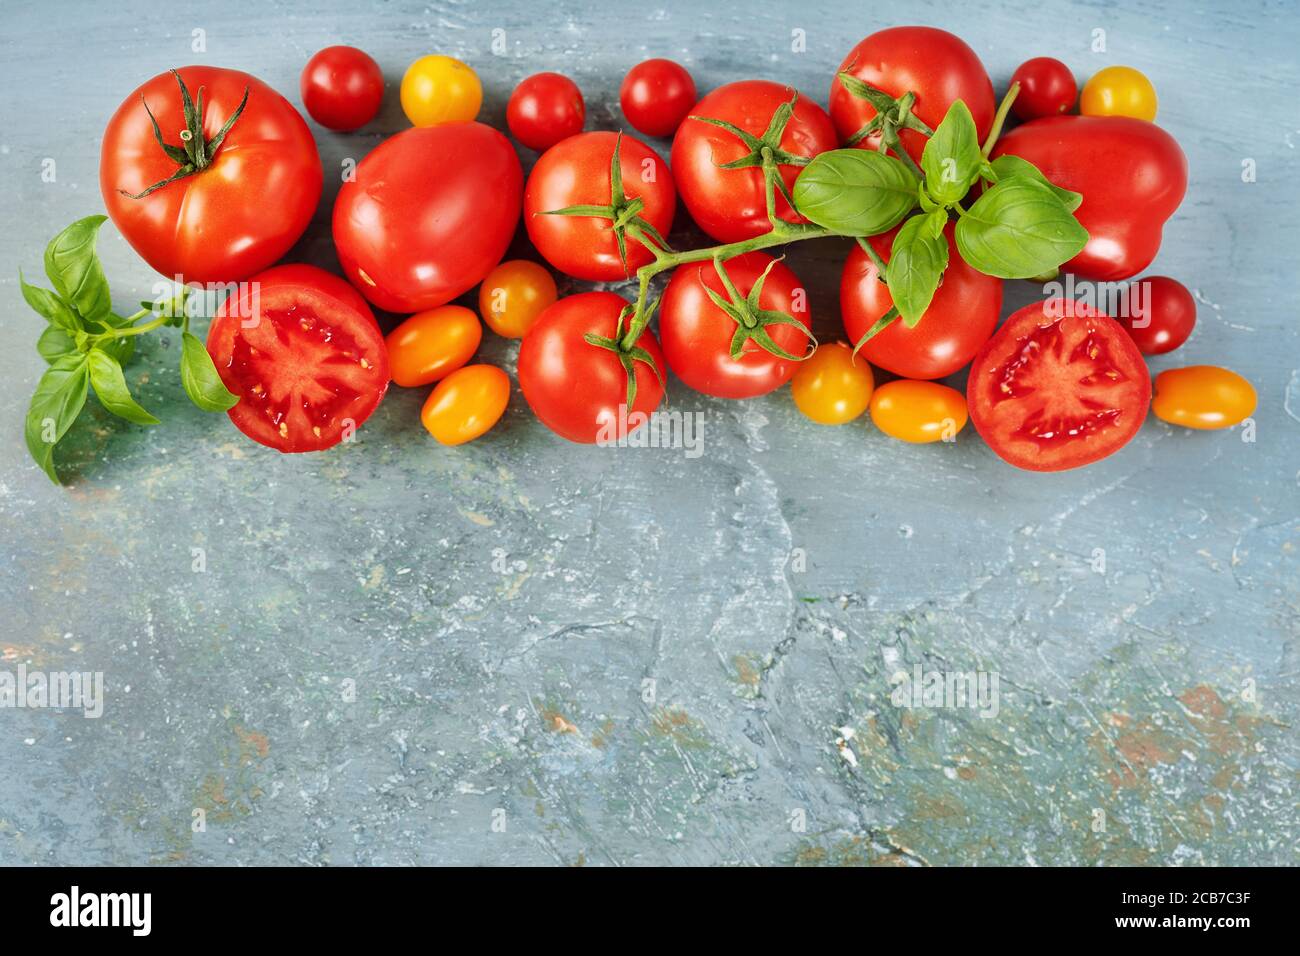 Vista dall'alto di molti pomodori rossi freschi e succosi sul parte superiore dell'immagine su sfondo blu Foto Stock